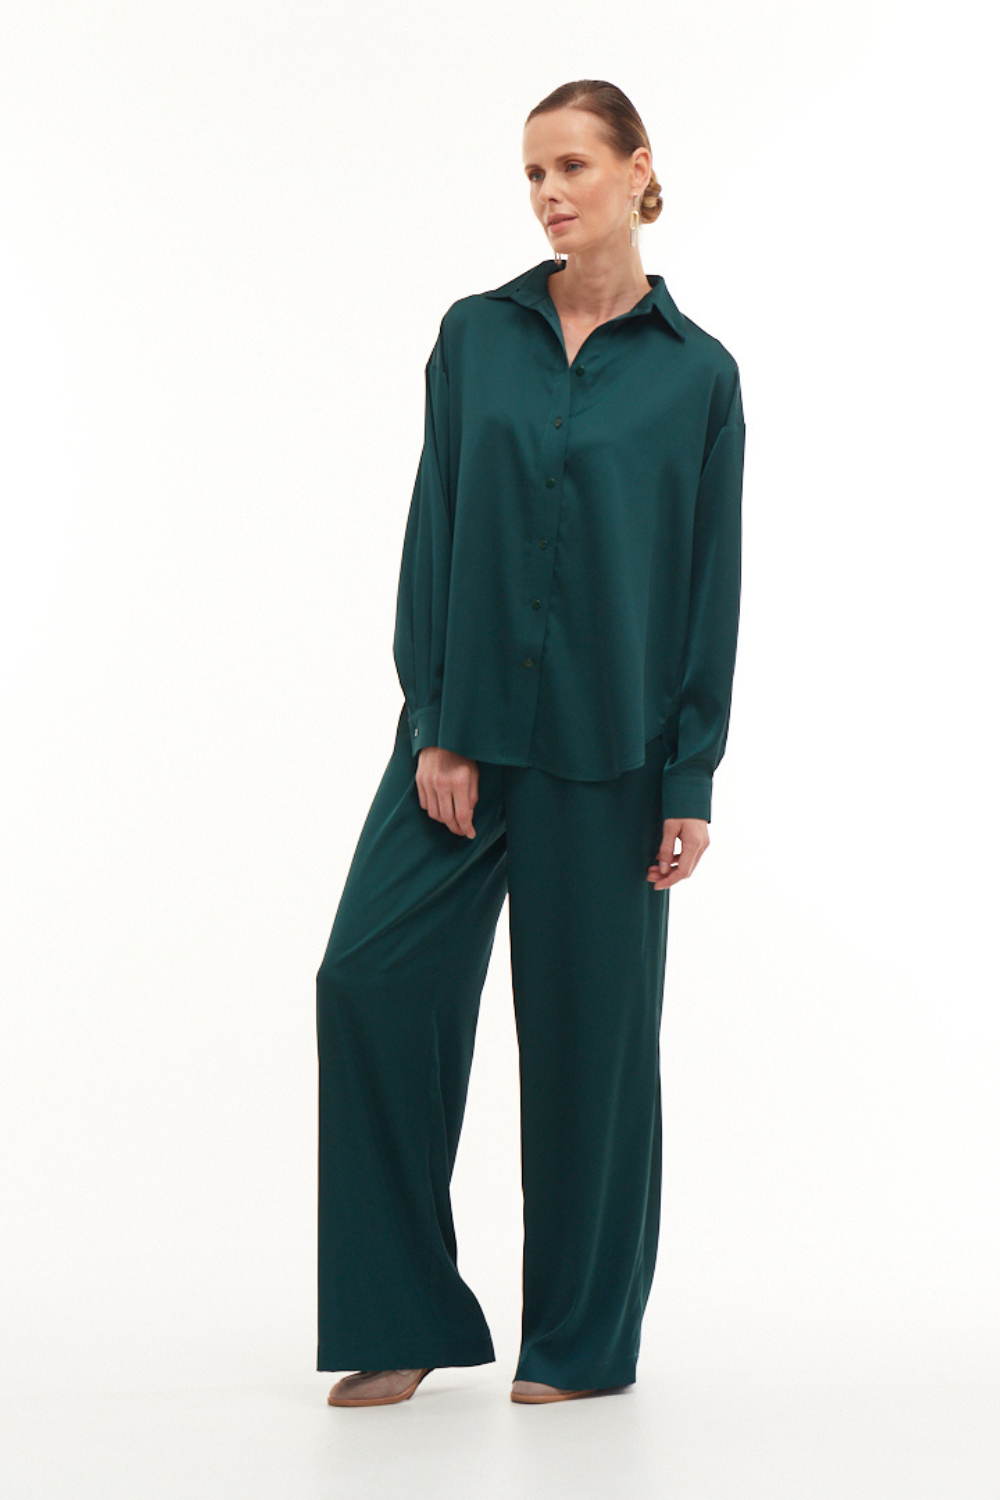 Smaragdové kalhoty BASIC, (Mint), 21628